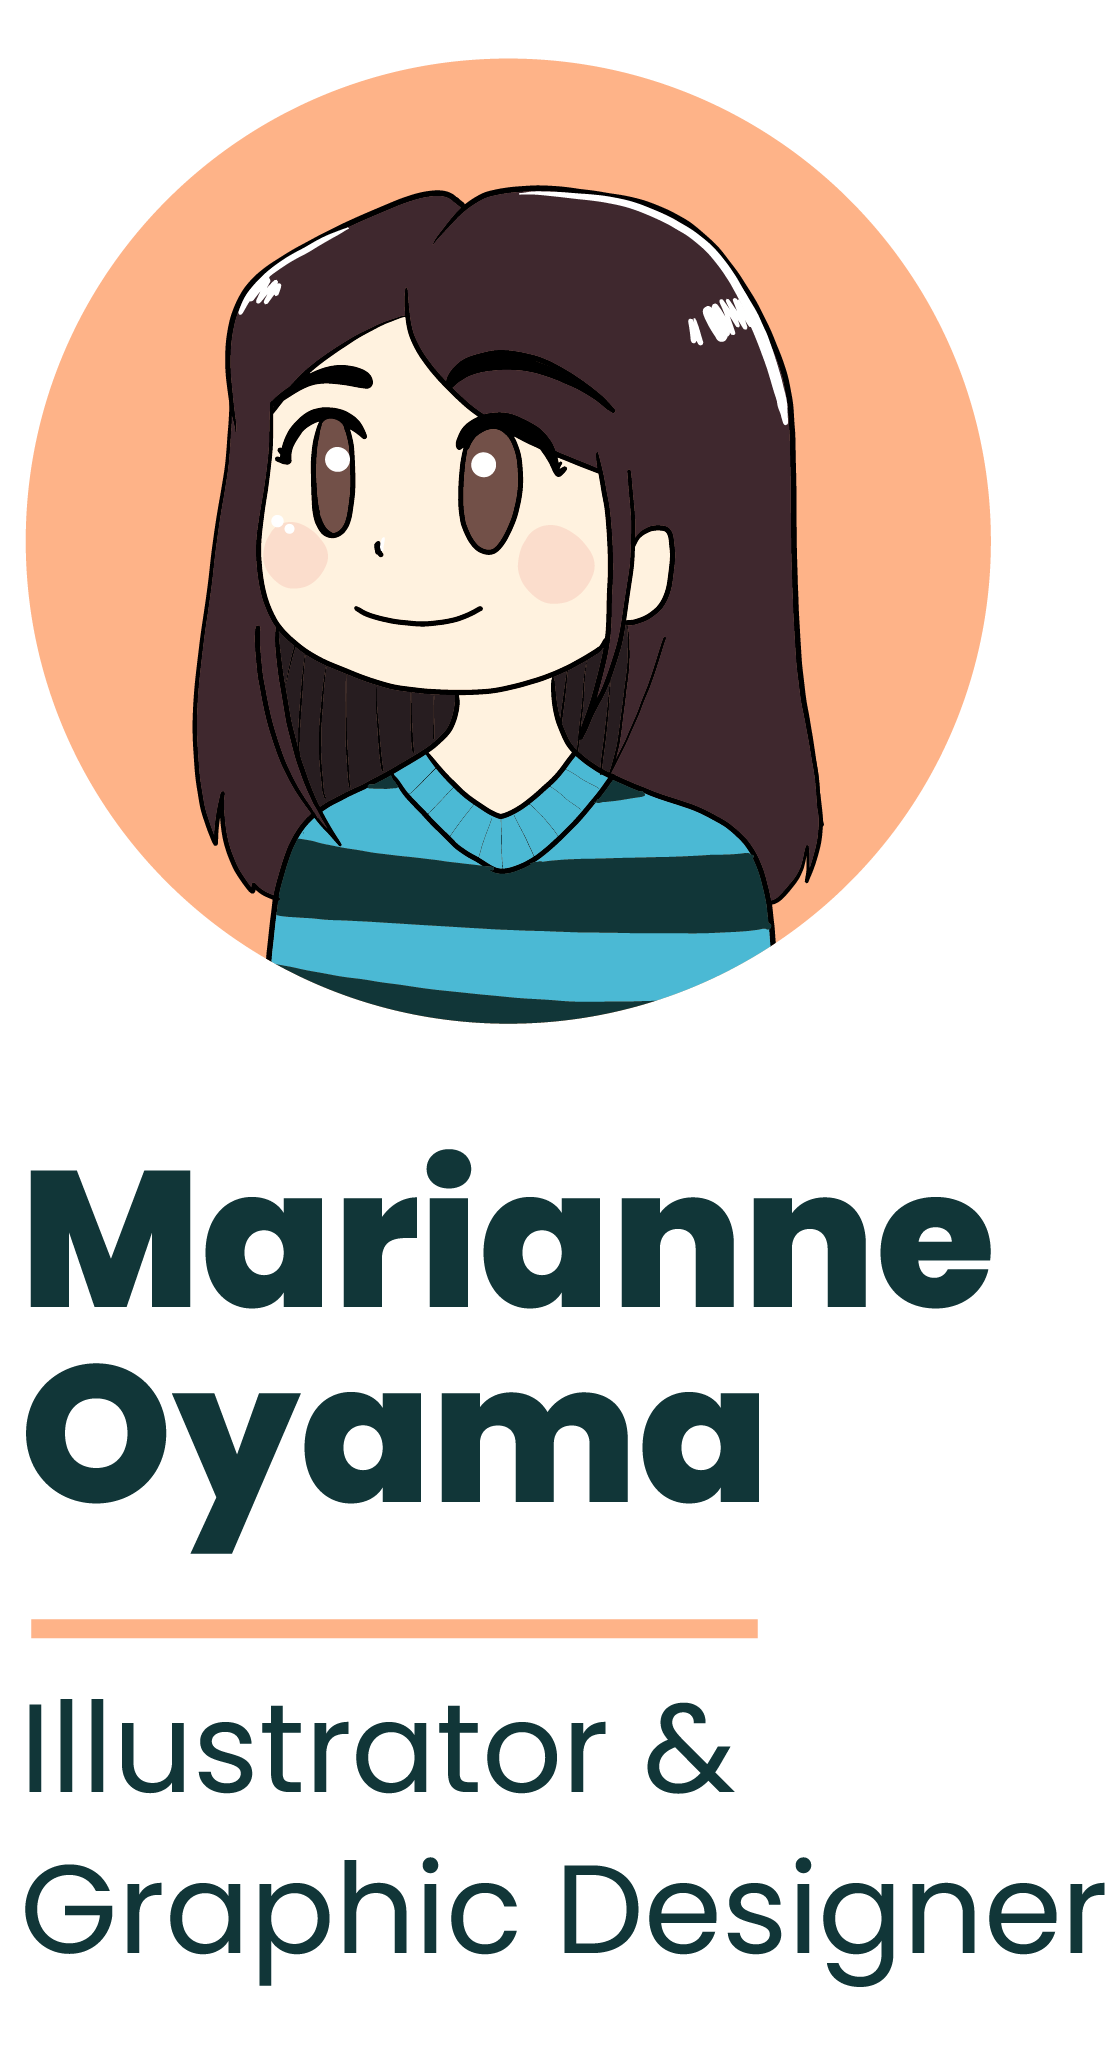 Marianne Oyama